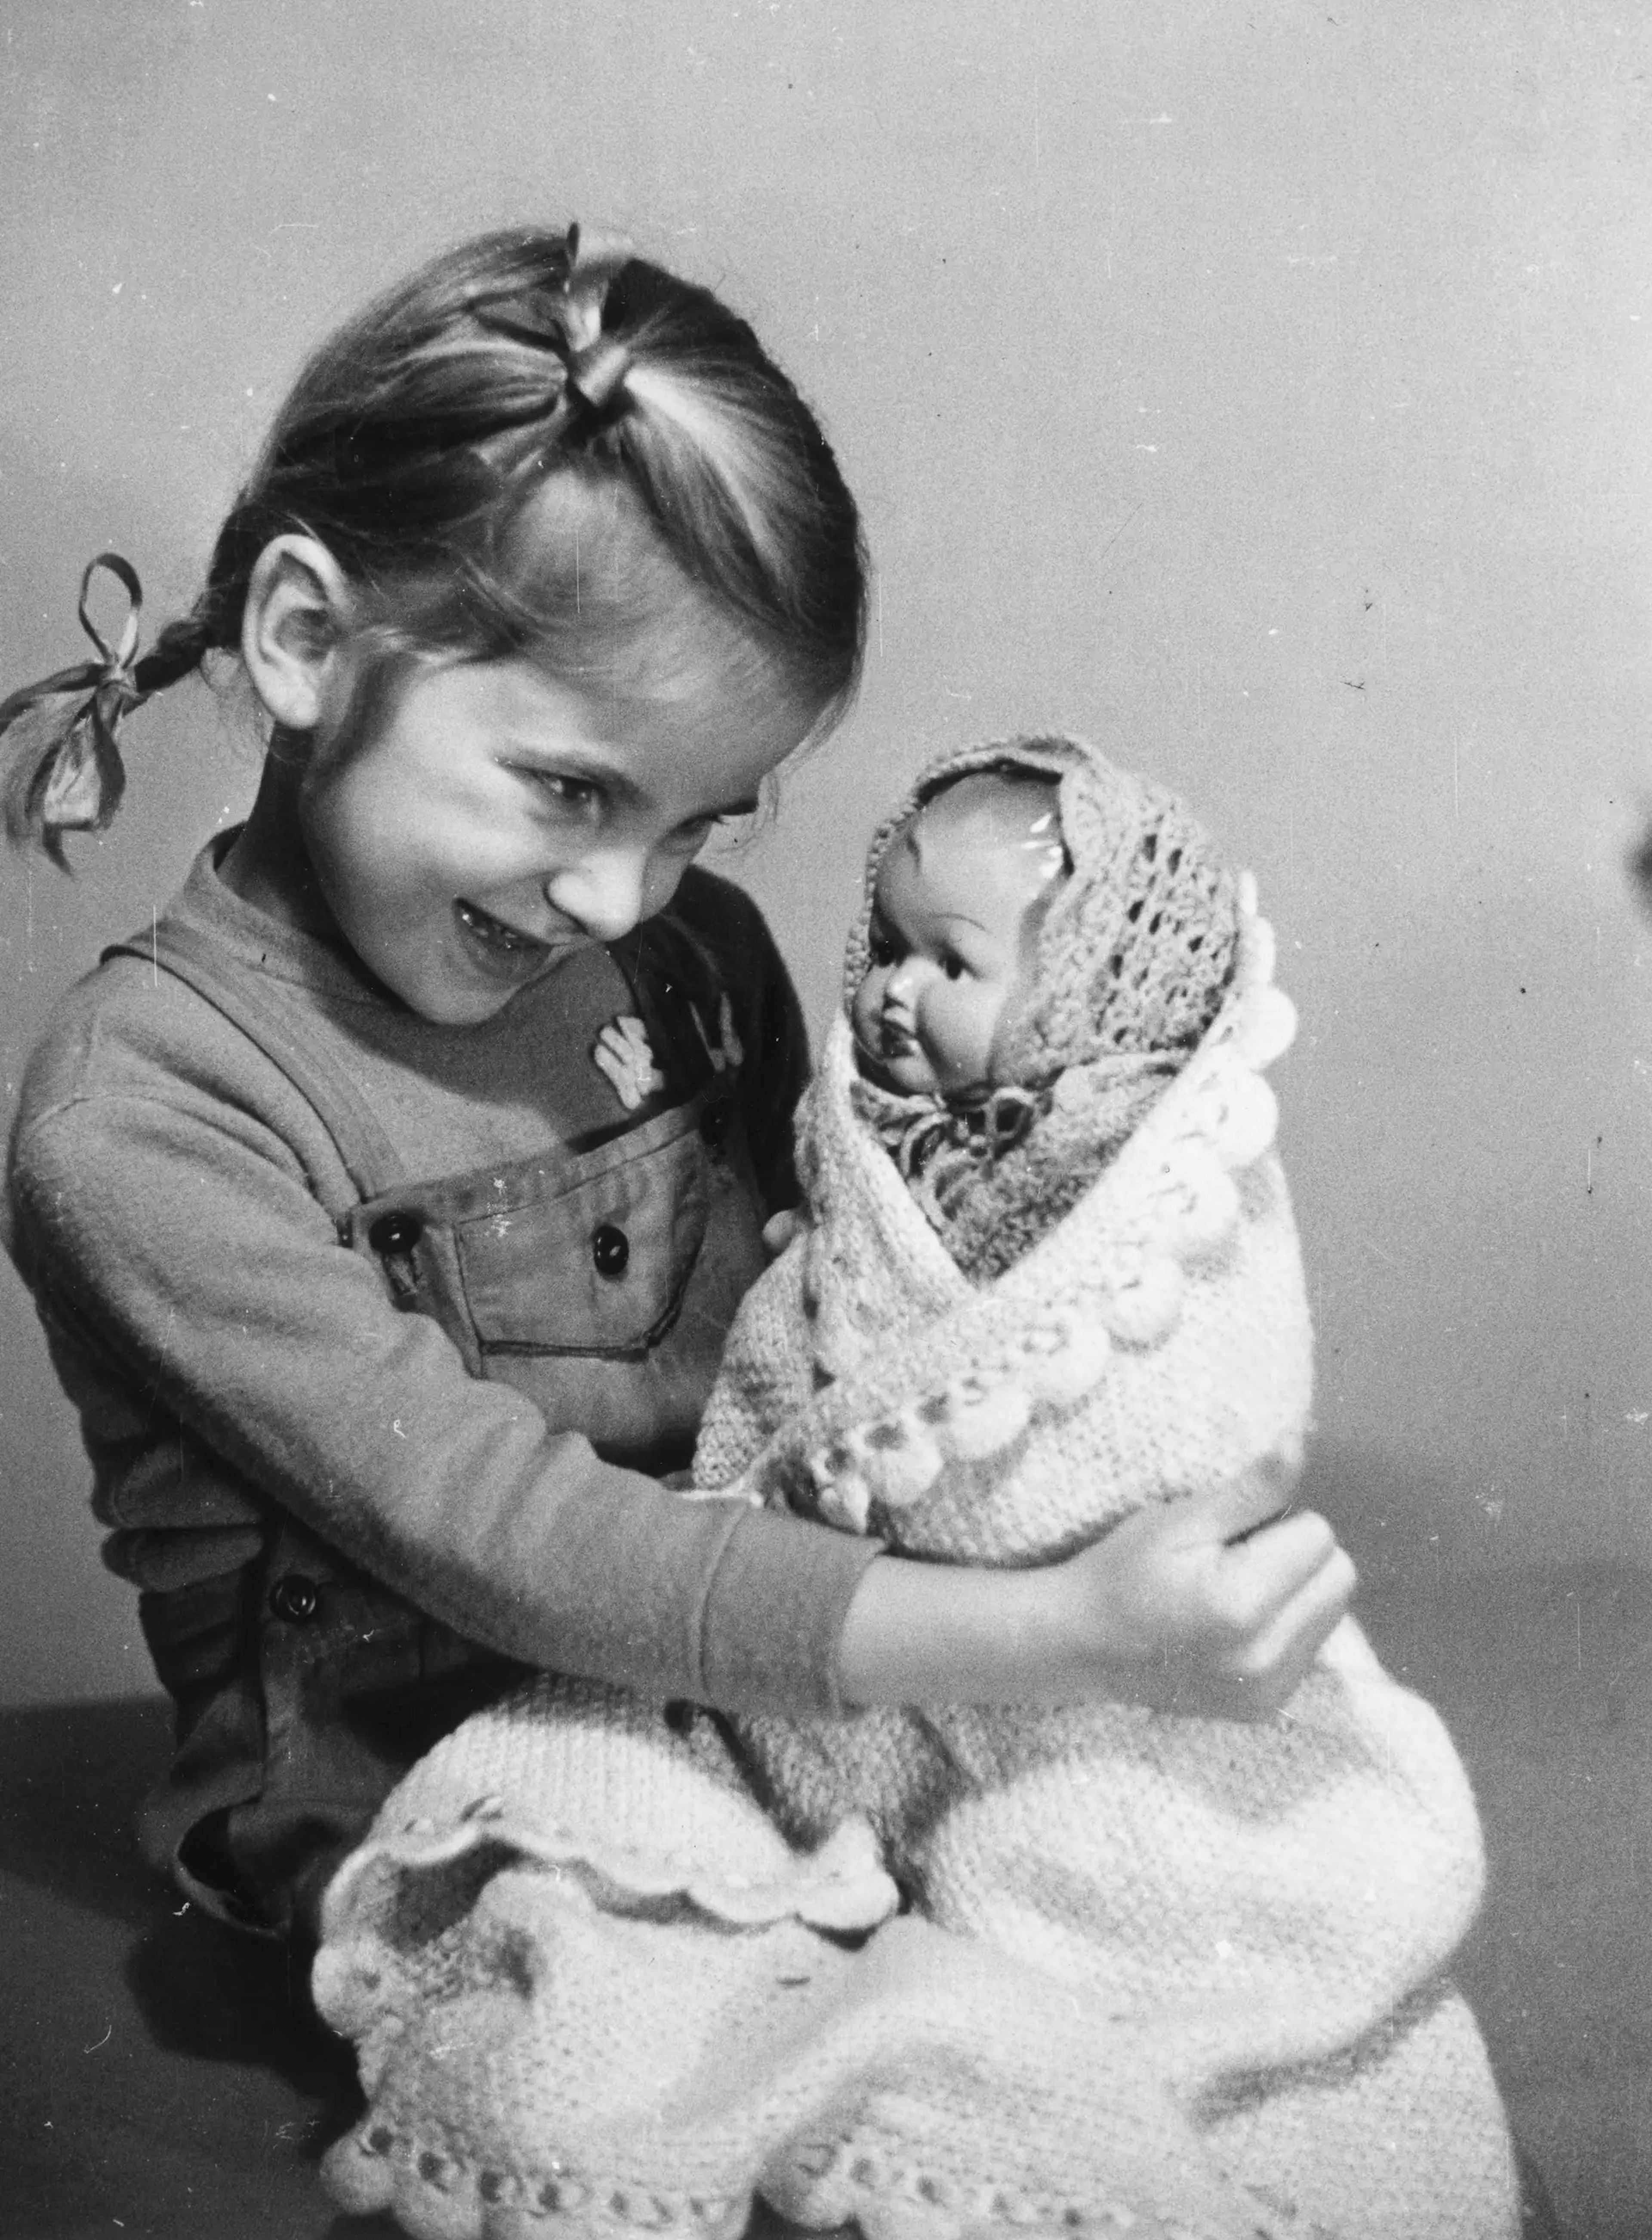 Una niña jugando con una muñeca en 1950.